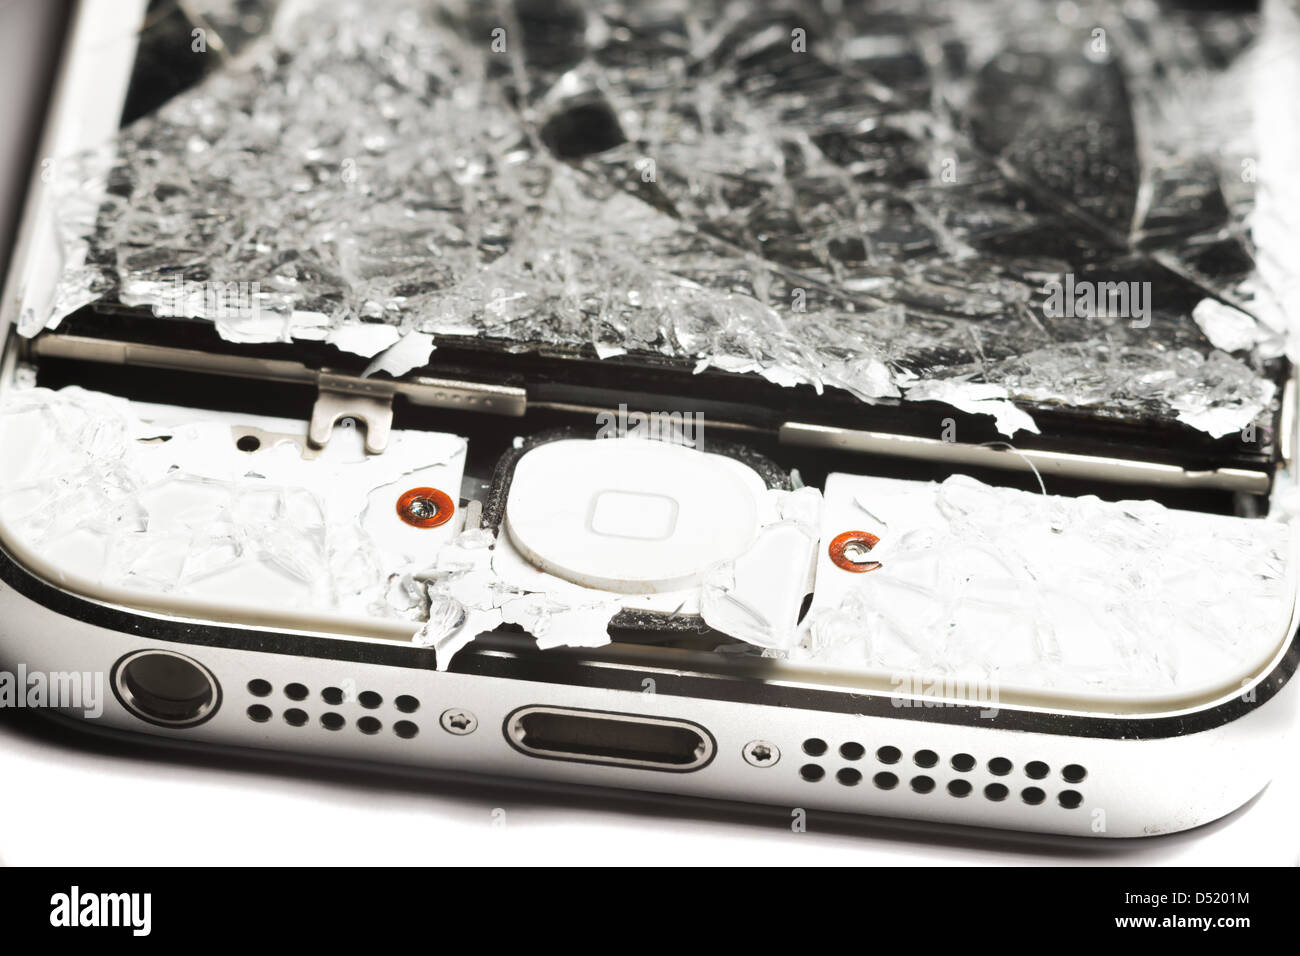 Smashed smart phone Stock Photo